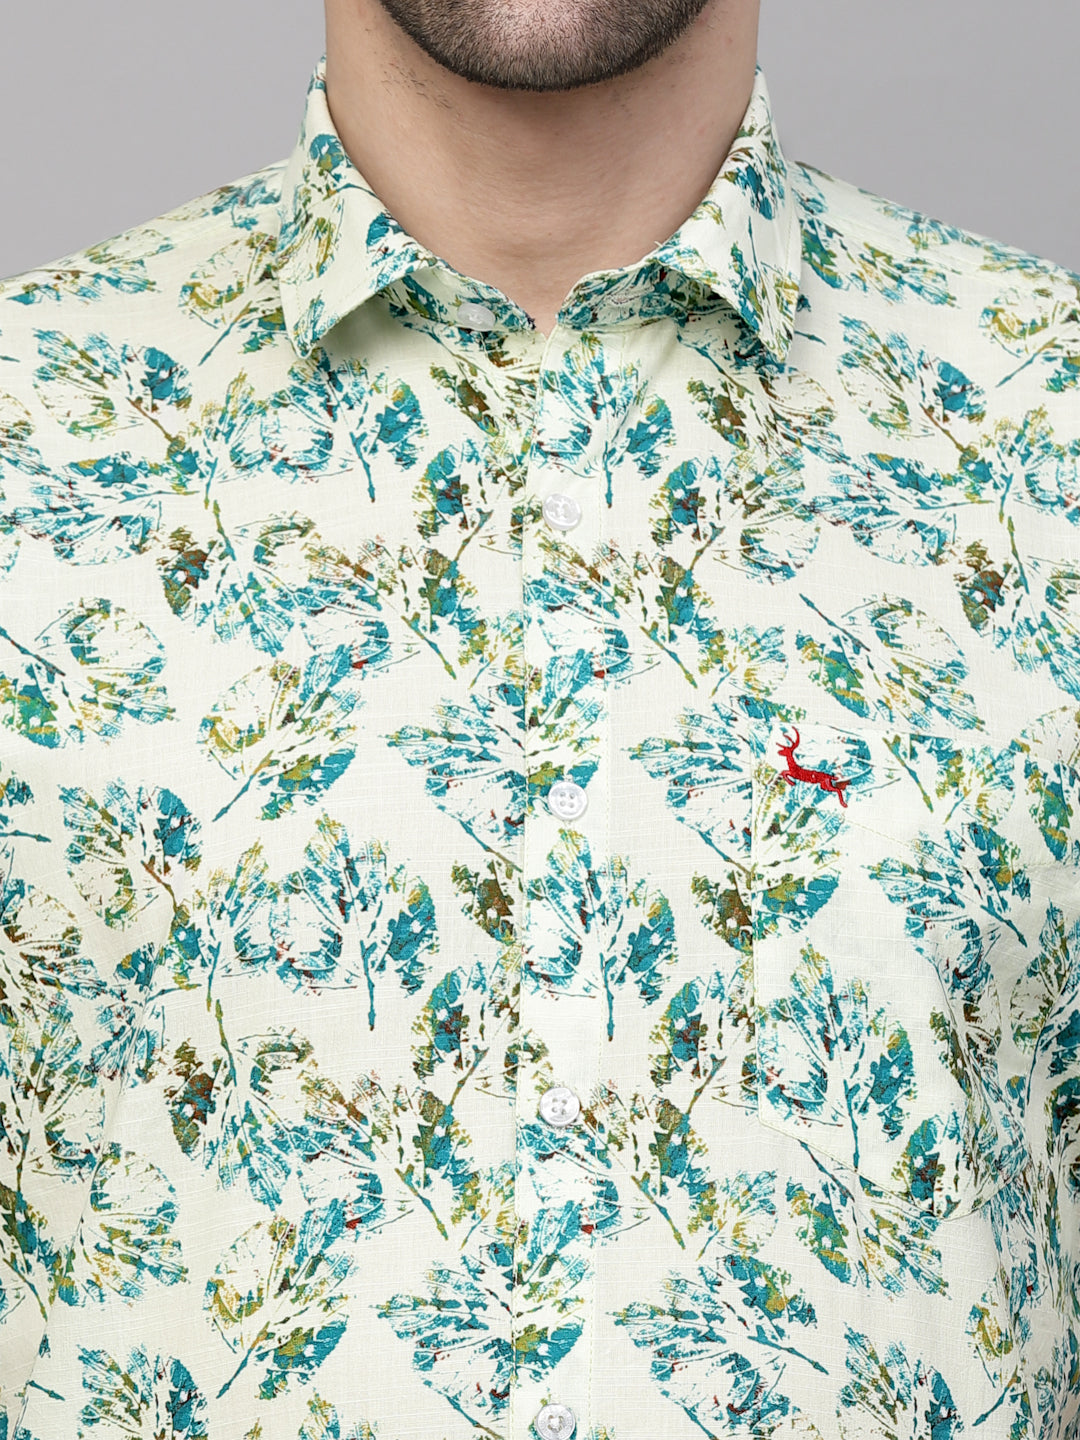 Valbone Men’s Green Digital Print Leaves Printed Regular Fit Casual Shirt Half Sleeves